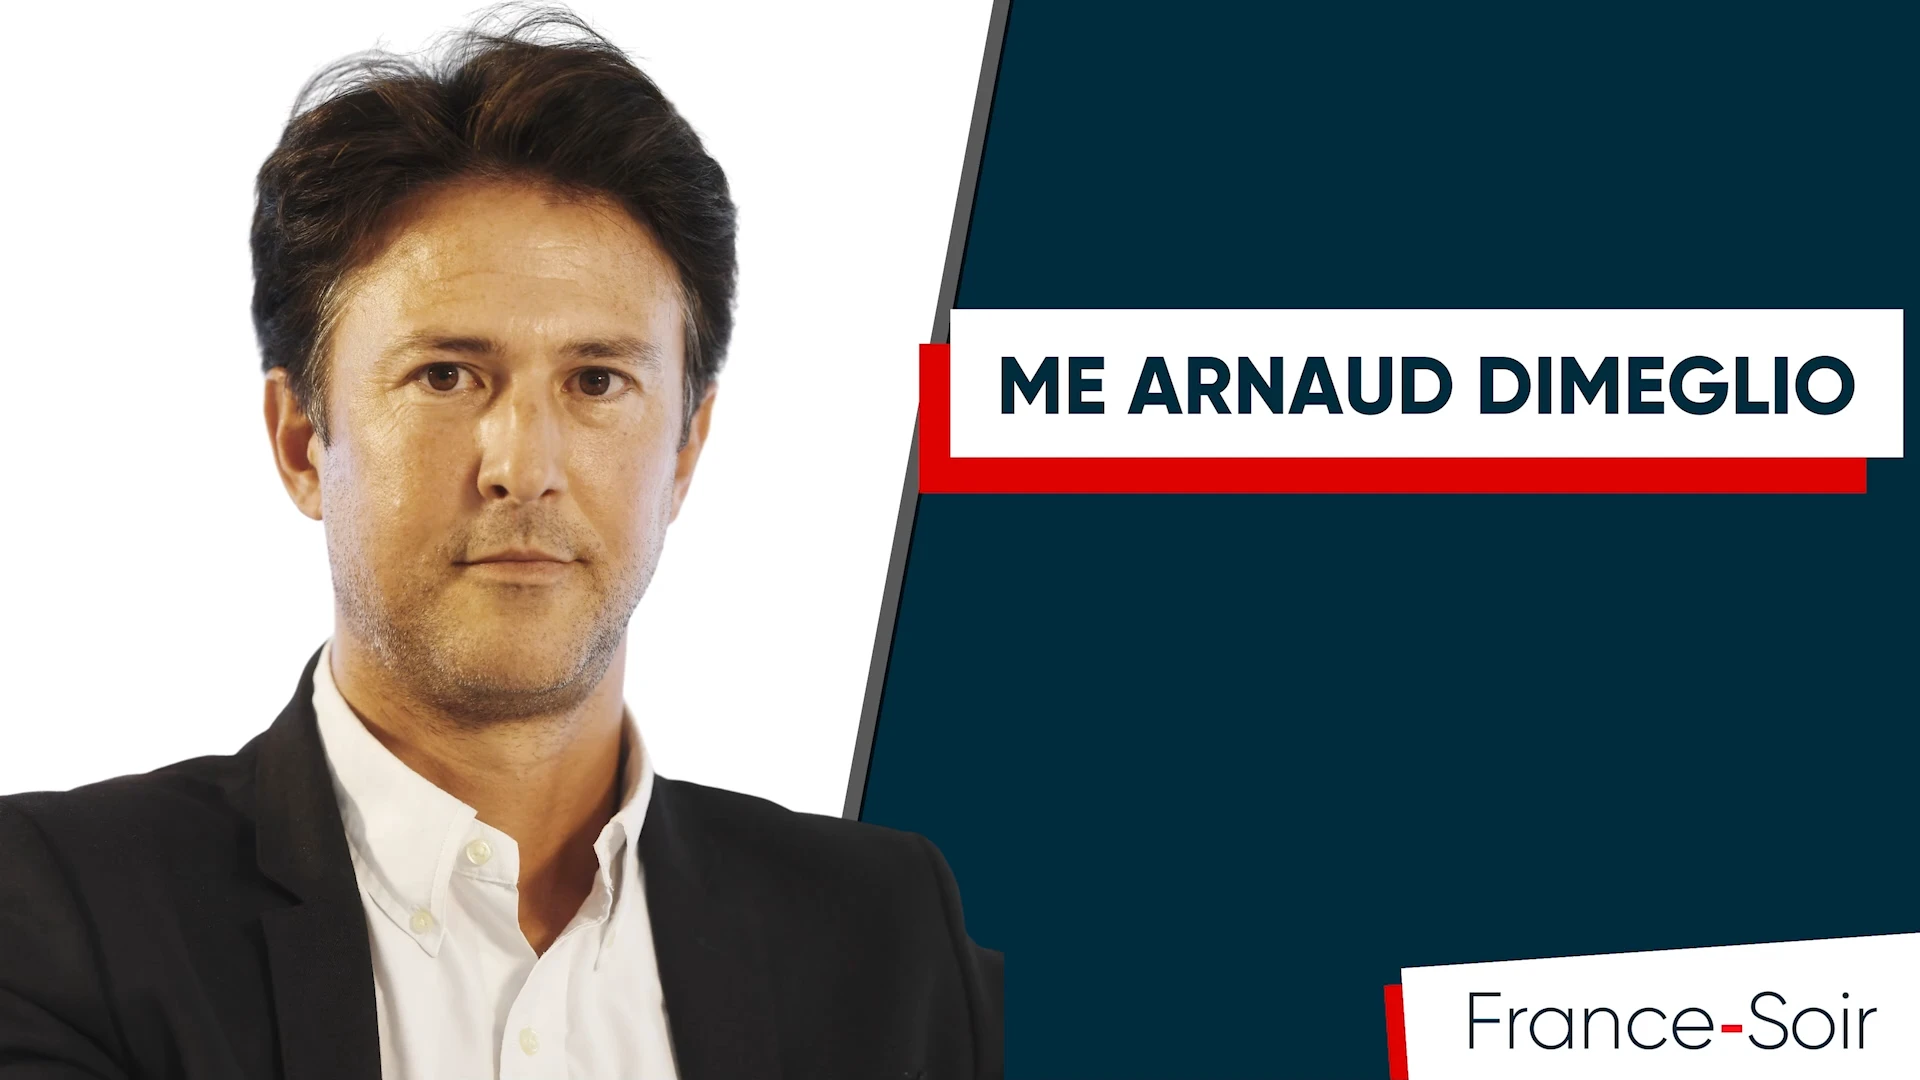 Le Monde condamné : « Les fact-checkeurs ont été fact-checkés », décryptage de l’avocat de France-Soir, Me Arnaud Dimeglio